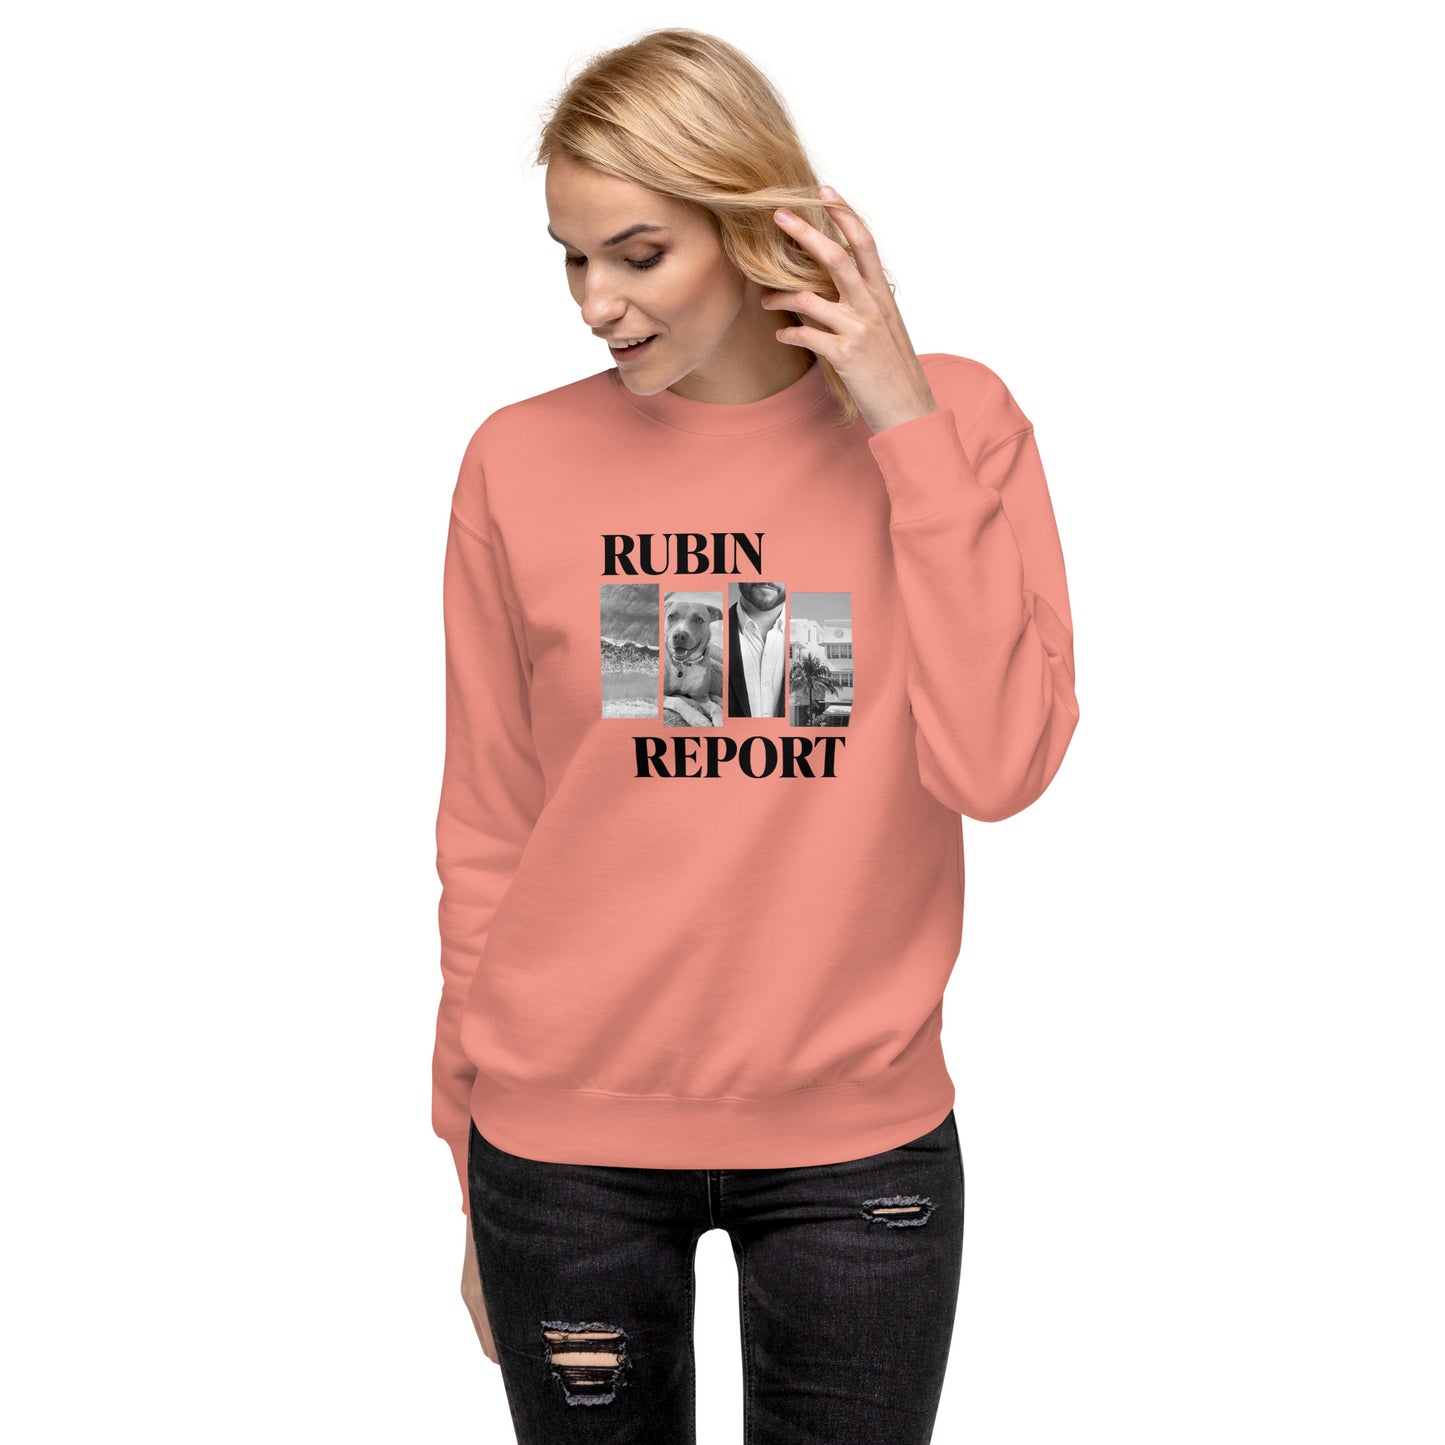 Rubin Report Lifestyle Sweatshirt